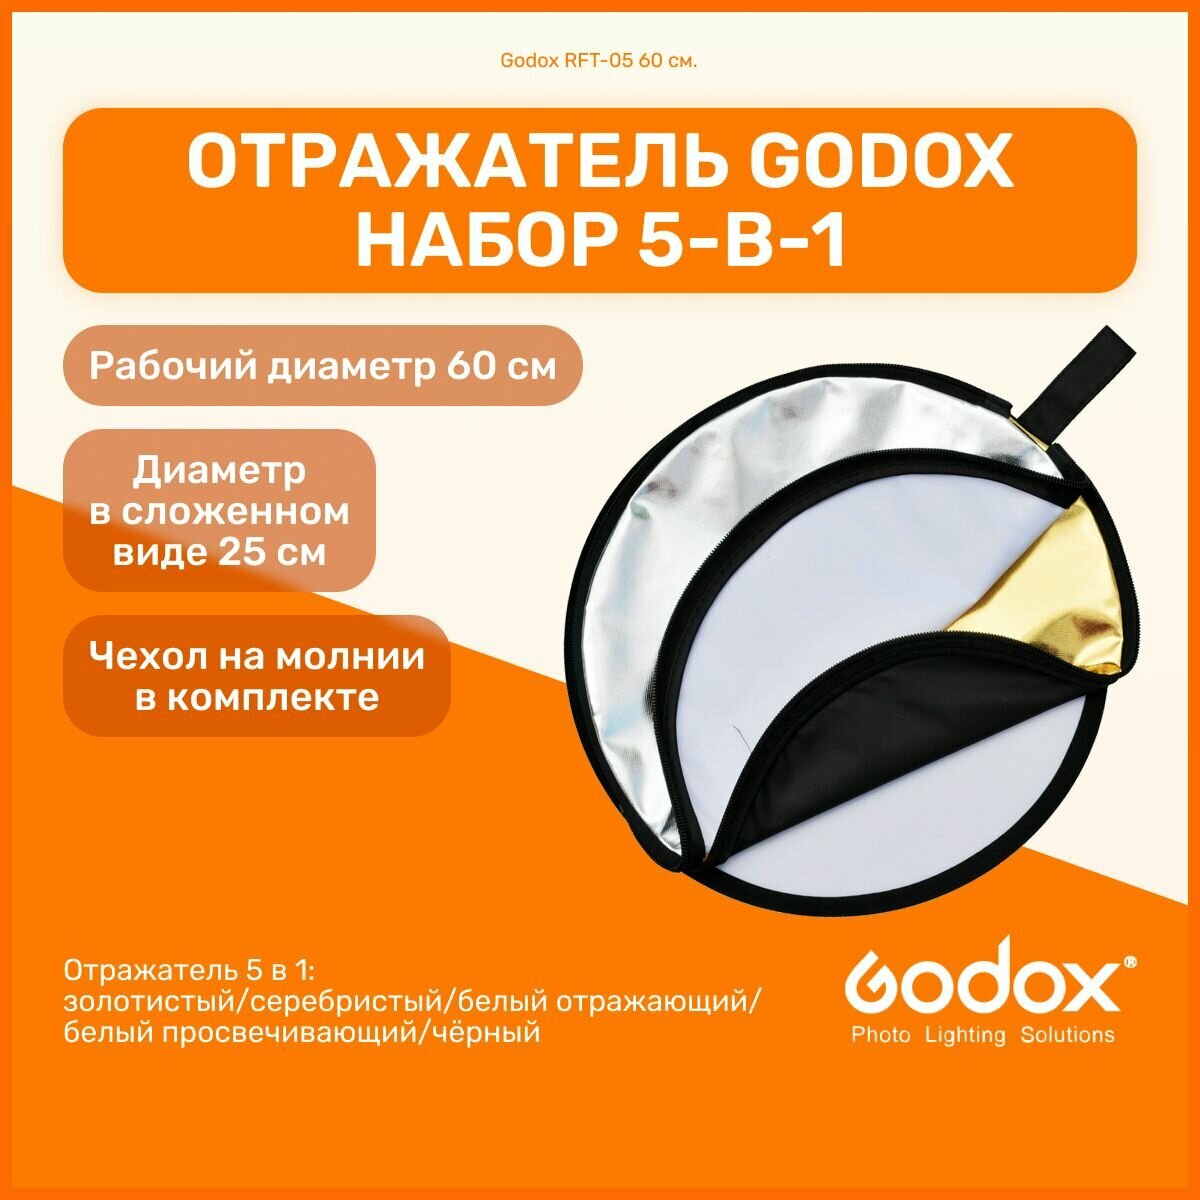 Отражатель Godox RFT-05 60 см. набор 5-в-1 круглый складной золотистый серебристый белый отражающий/просвечивающий чёрный для фото и видео съемок